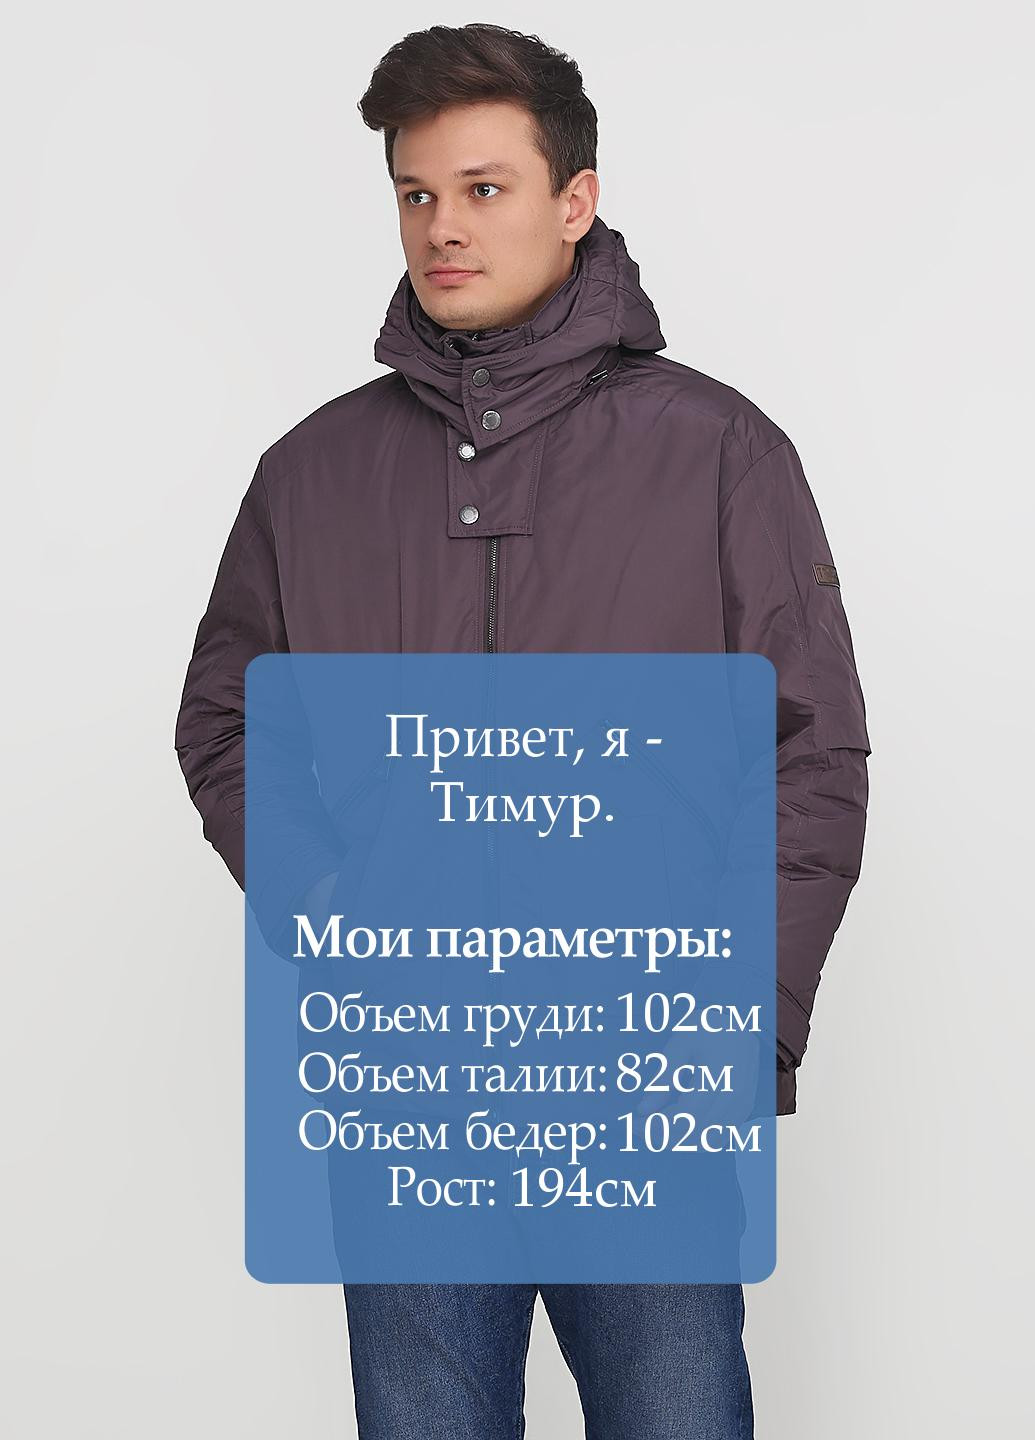 Сіро-коричнева зимня куртка Trussardi